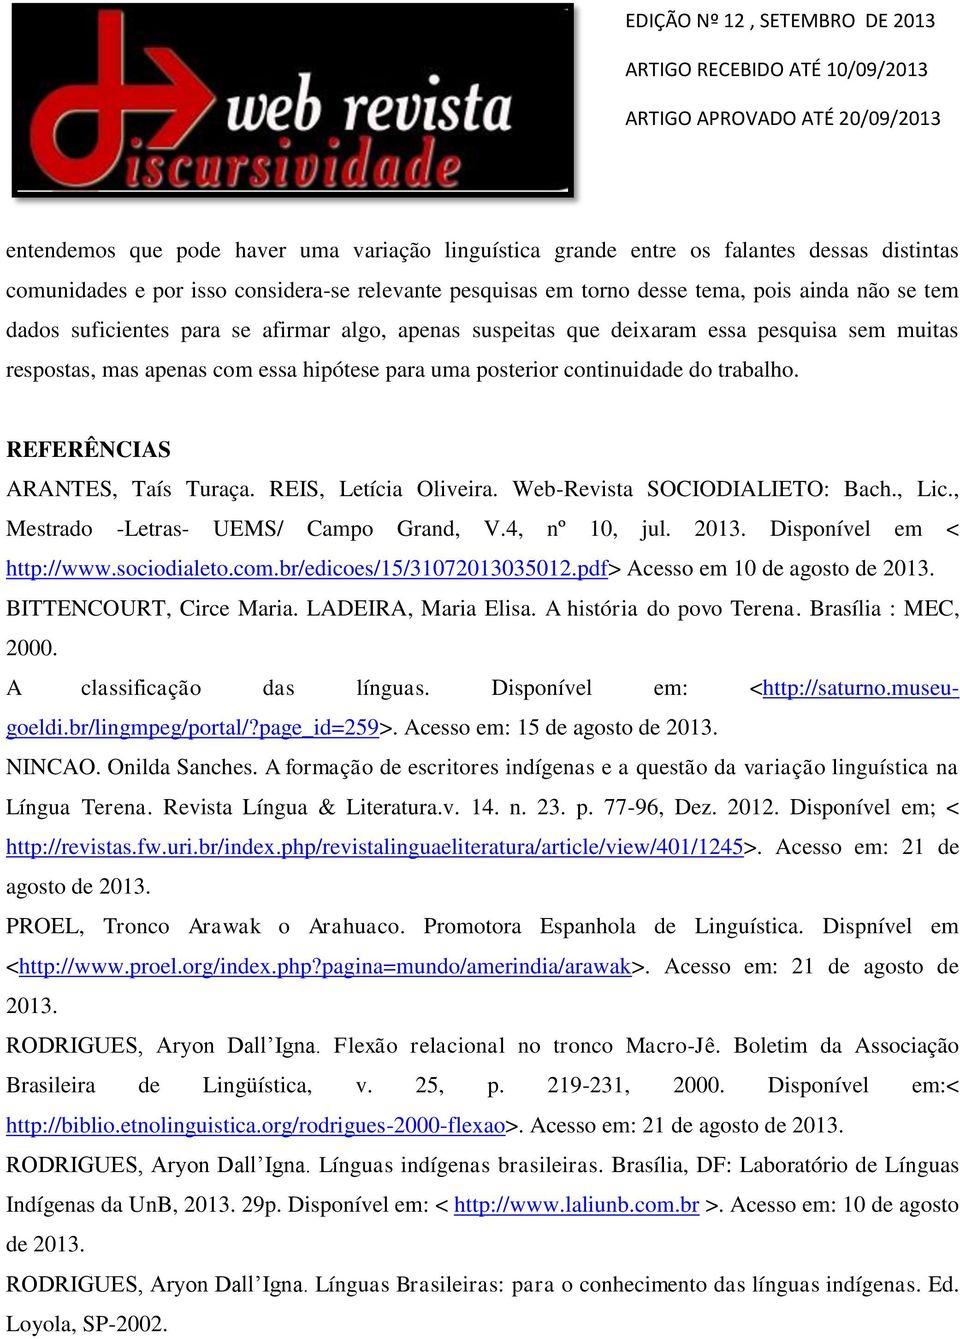 REFERÊNCIAS ARANTES, Taís Turaça. REIS, Letícia Oliveira. Web-Revista SOCIODIALIETO: Bach., Lic., Mestrado -Letras- UEMS/ Campo Grand, V.4, nº 10, jul. 2013. Disponível em < http://www.sociodialeto.